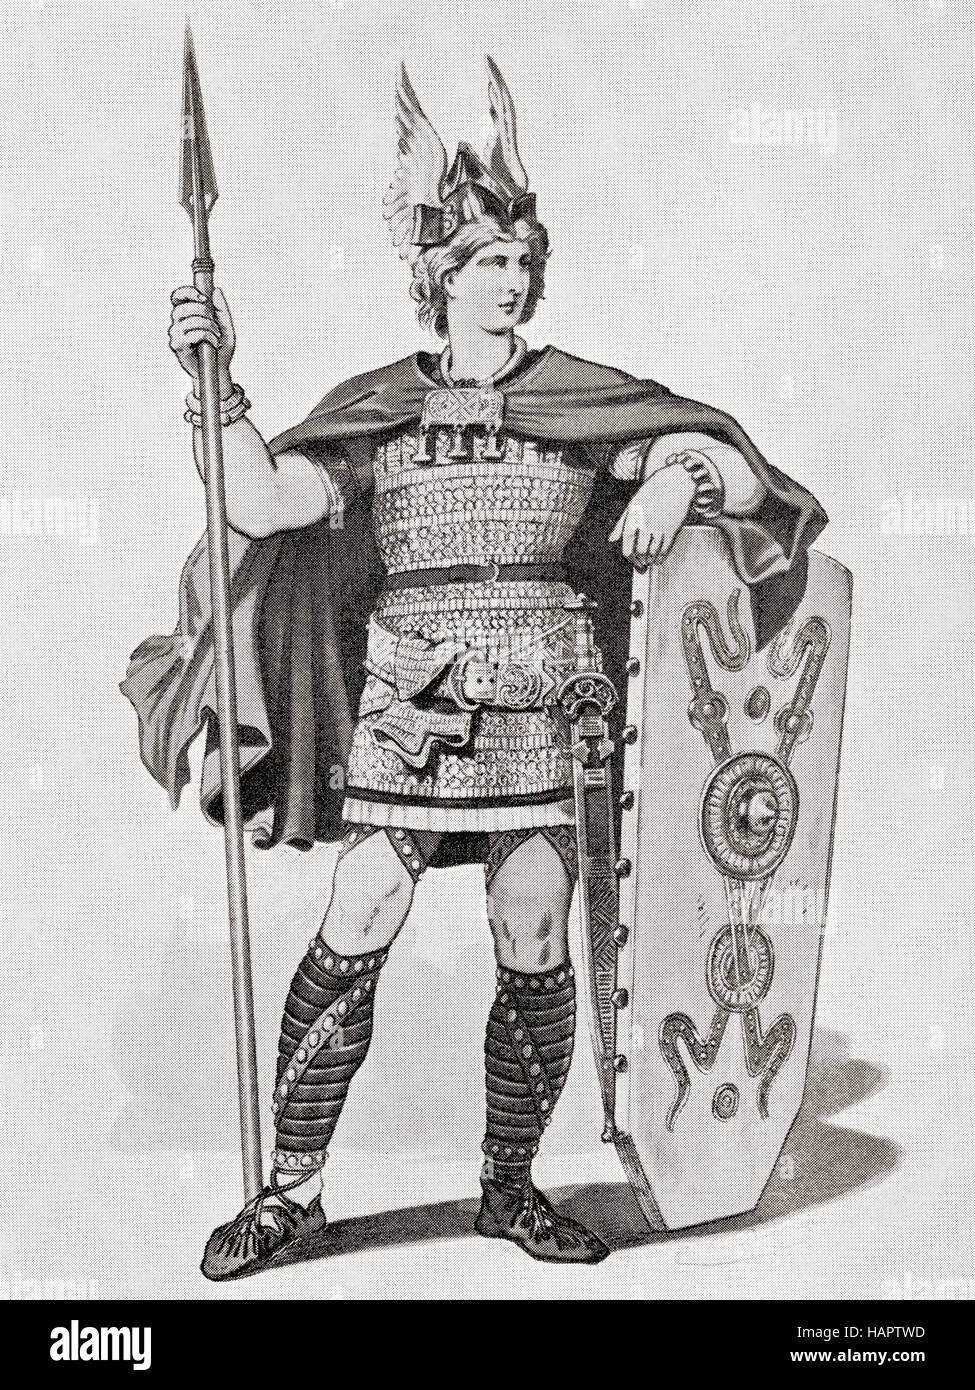 Siegfried. Une conception de costumes réalisés pour la production de Bayreuth de l'opéra de Richard Wagner de 1876, Siegfried. Banque D'Images